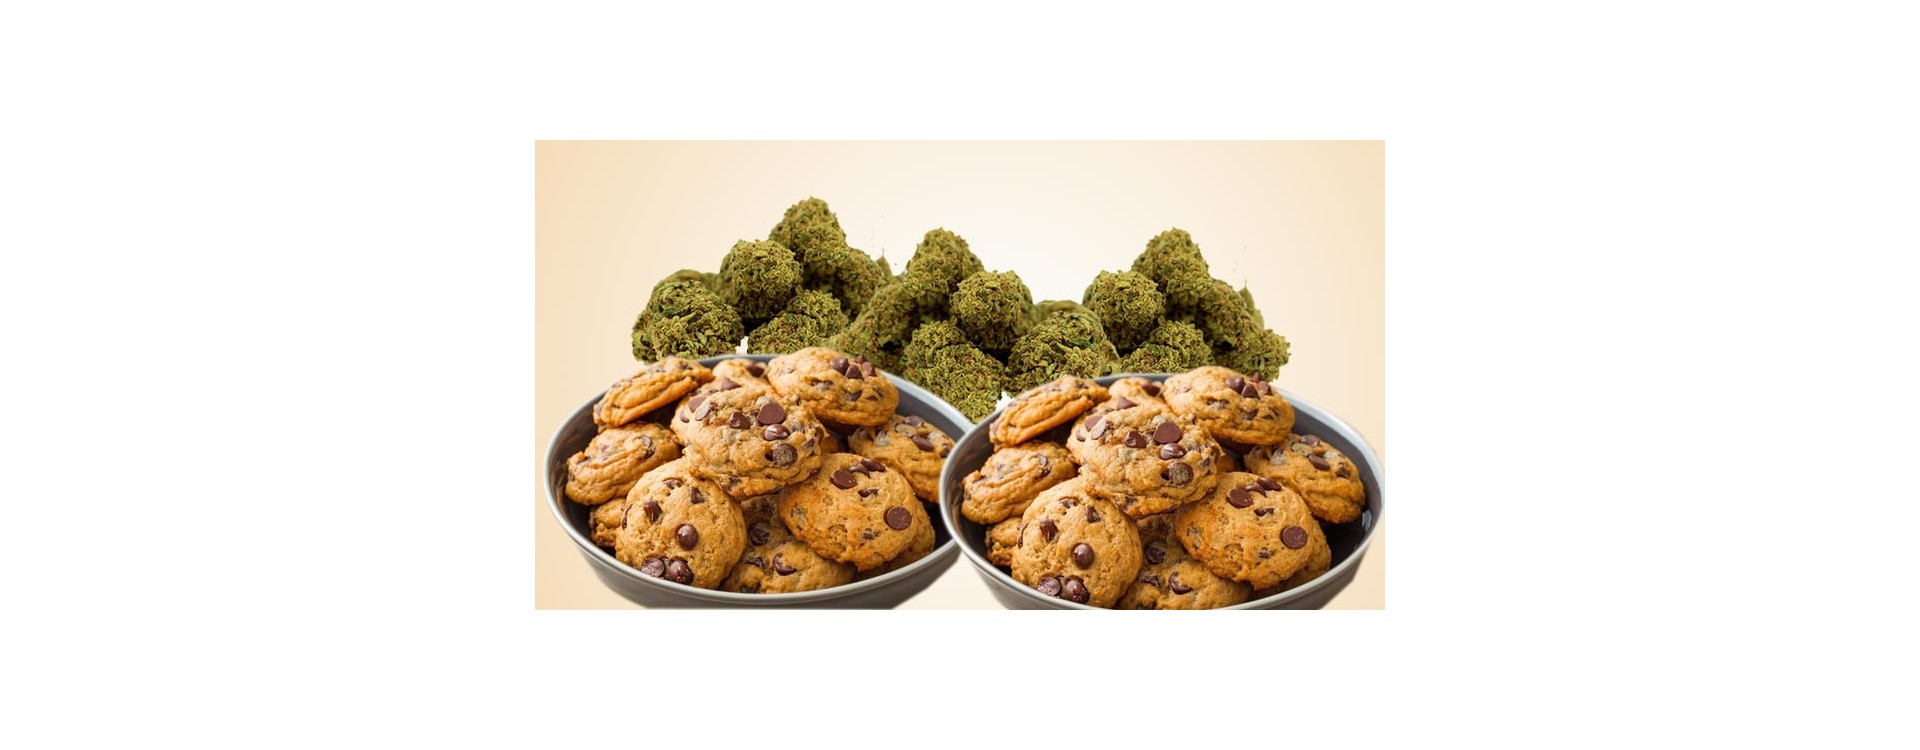 Como hacer galletas de marihuana